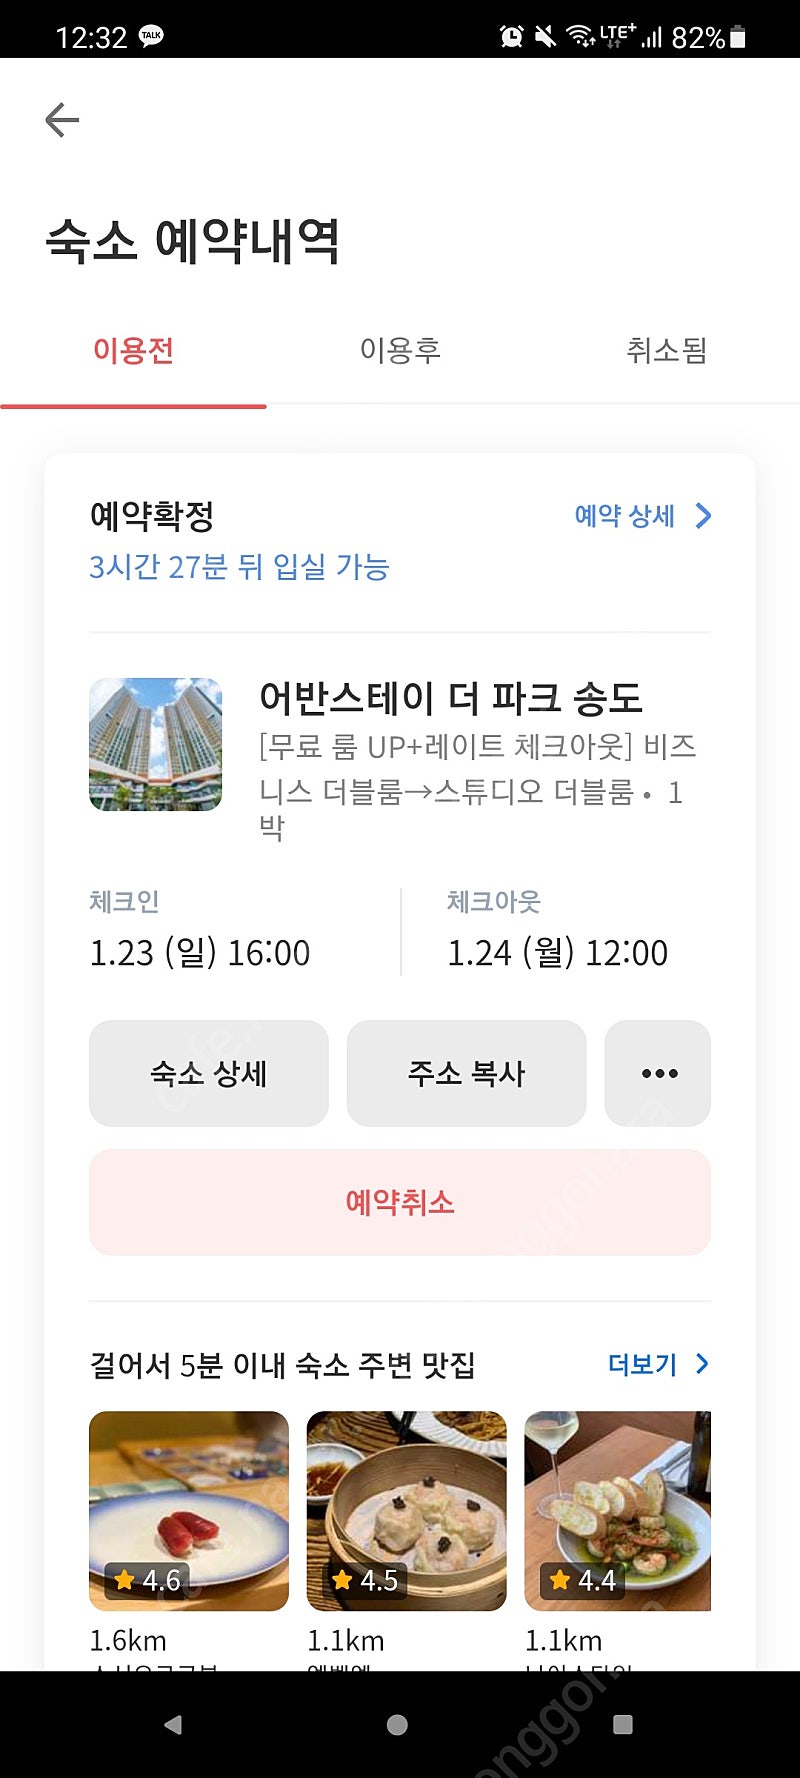 인천 송도 '어반 스테이 더 파크' 당일 양도합니다1.23(일) - 1.24(월)